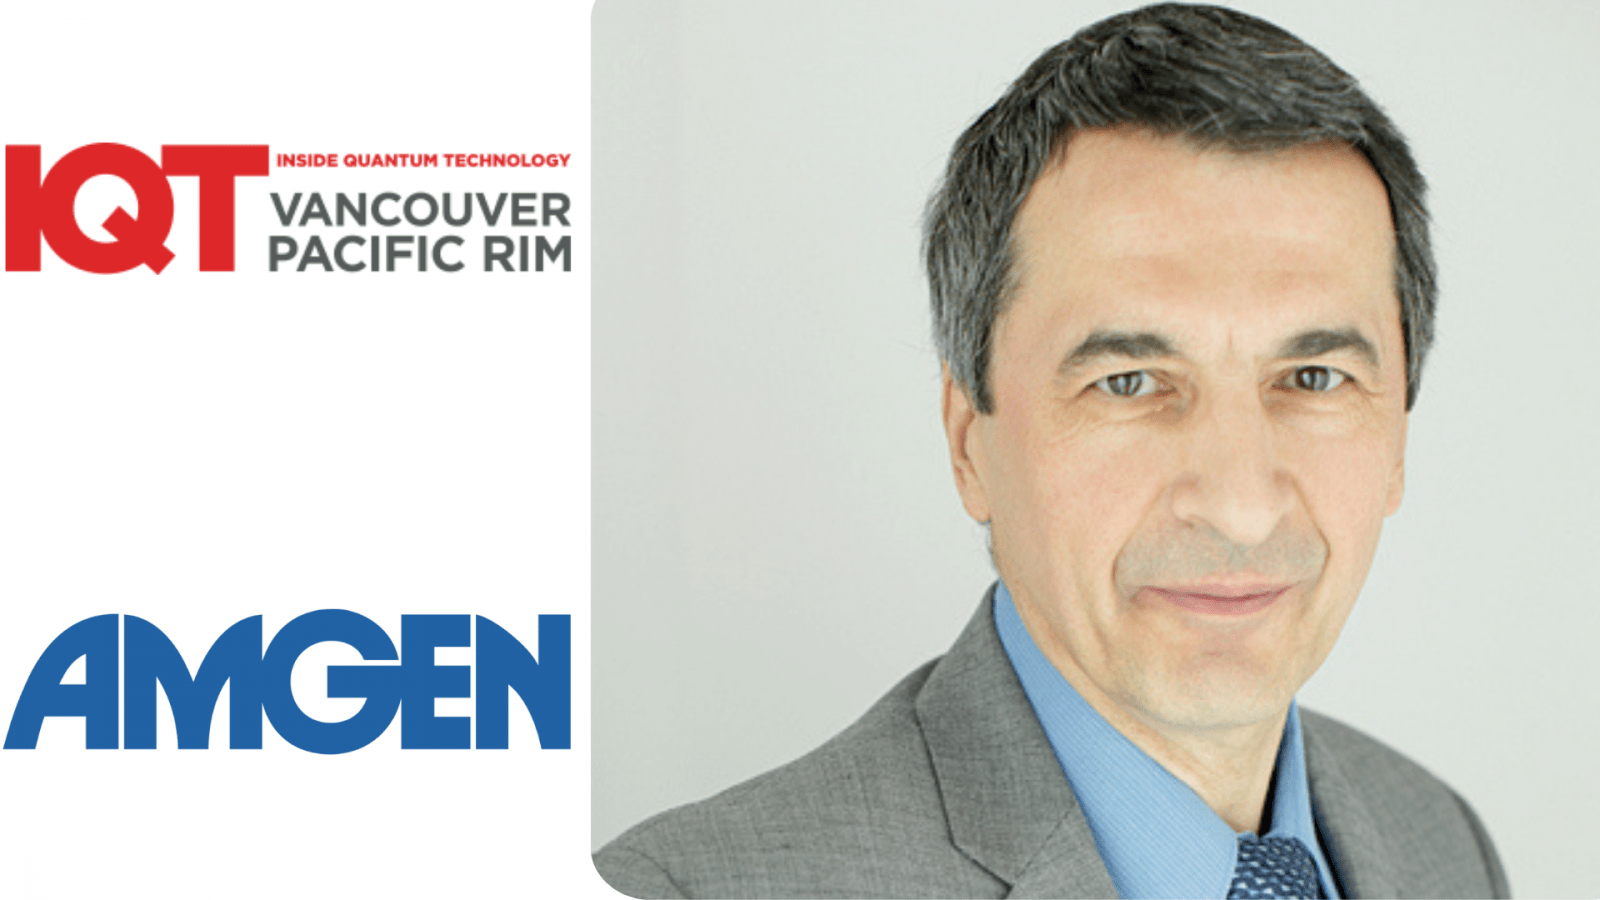 Зоран Крунич, старший менеджер по науке о данных в Amgen, выступает на конференции IQT в Ванкувере/Тихоокеанском регионе в 2024 году.